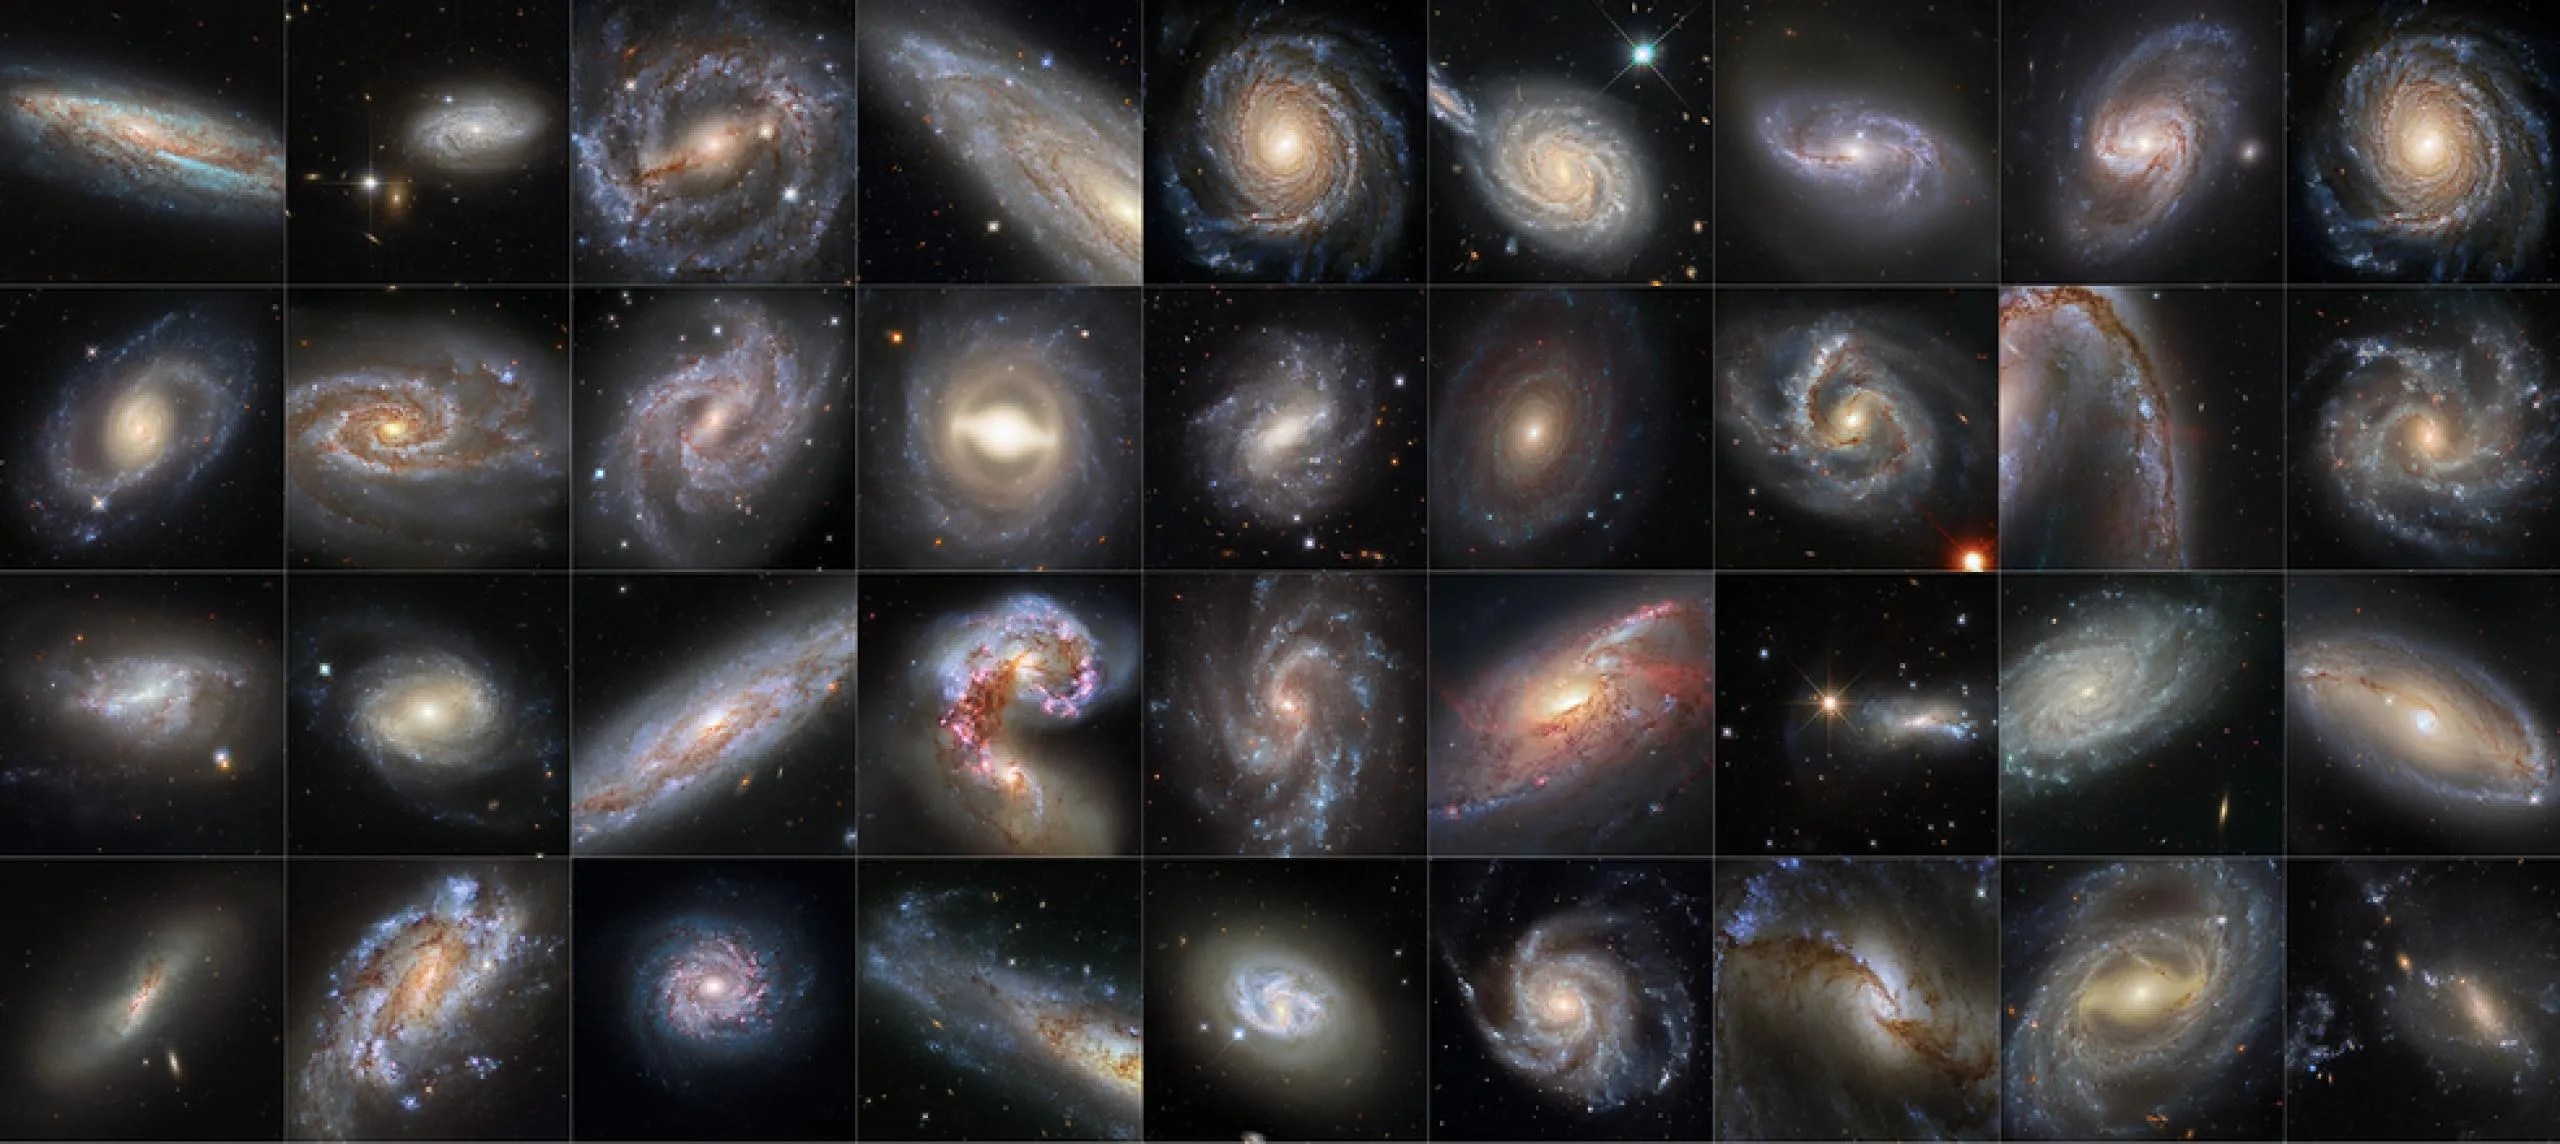 Esta colección de 36 imágenes del telescopio espacial Hubble de la NASA presenta galaxias que albergan tanto estrellas variables cefeidas como supernovas. Estos dos fenómenos celestiales son herramientas cruciales que los astrónomos utilizan para determinar distancias astronómicas, y han sido empleadas para refinar nuestra medición de la constante de Hubble, la velocidad de expansión del universo.